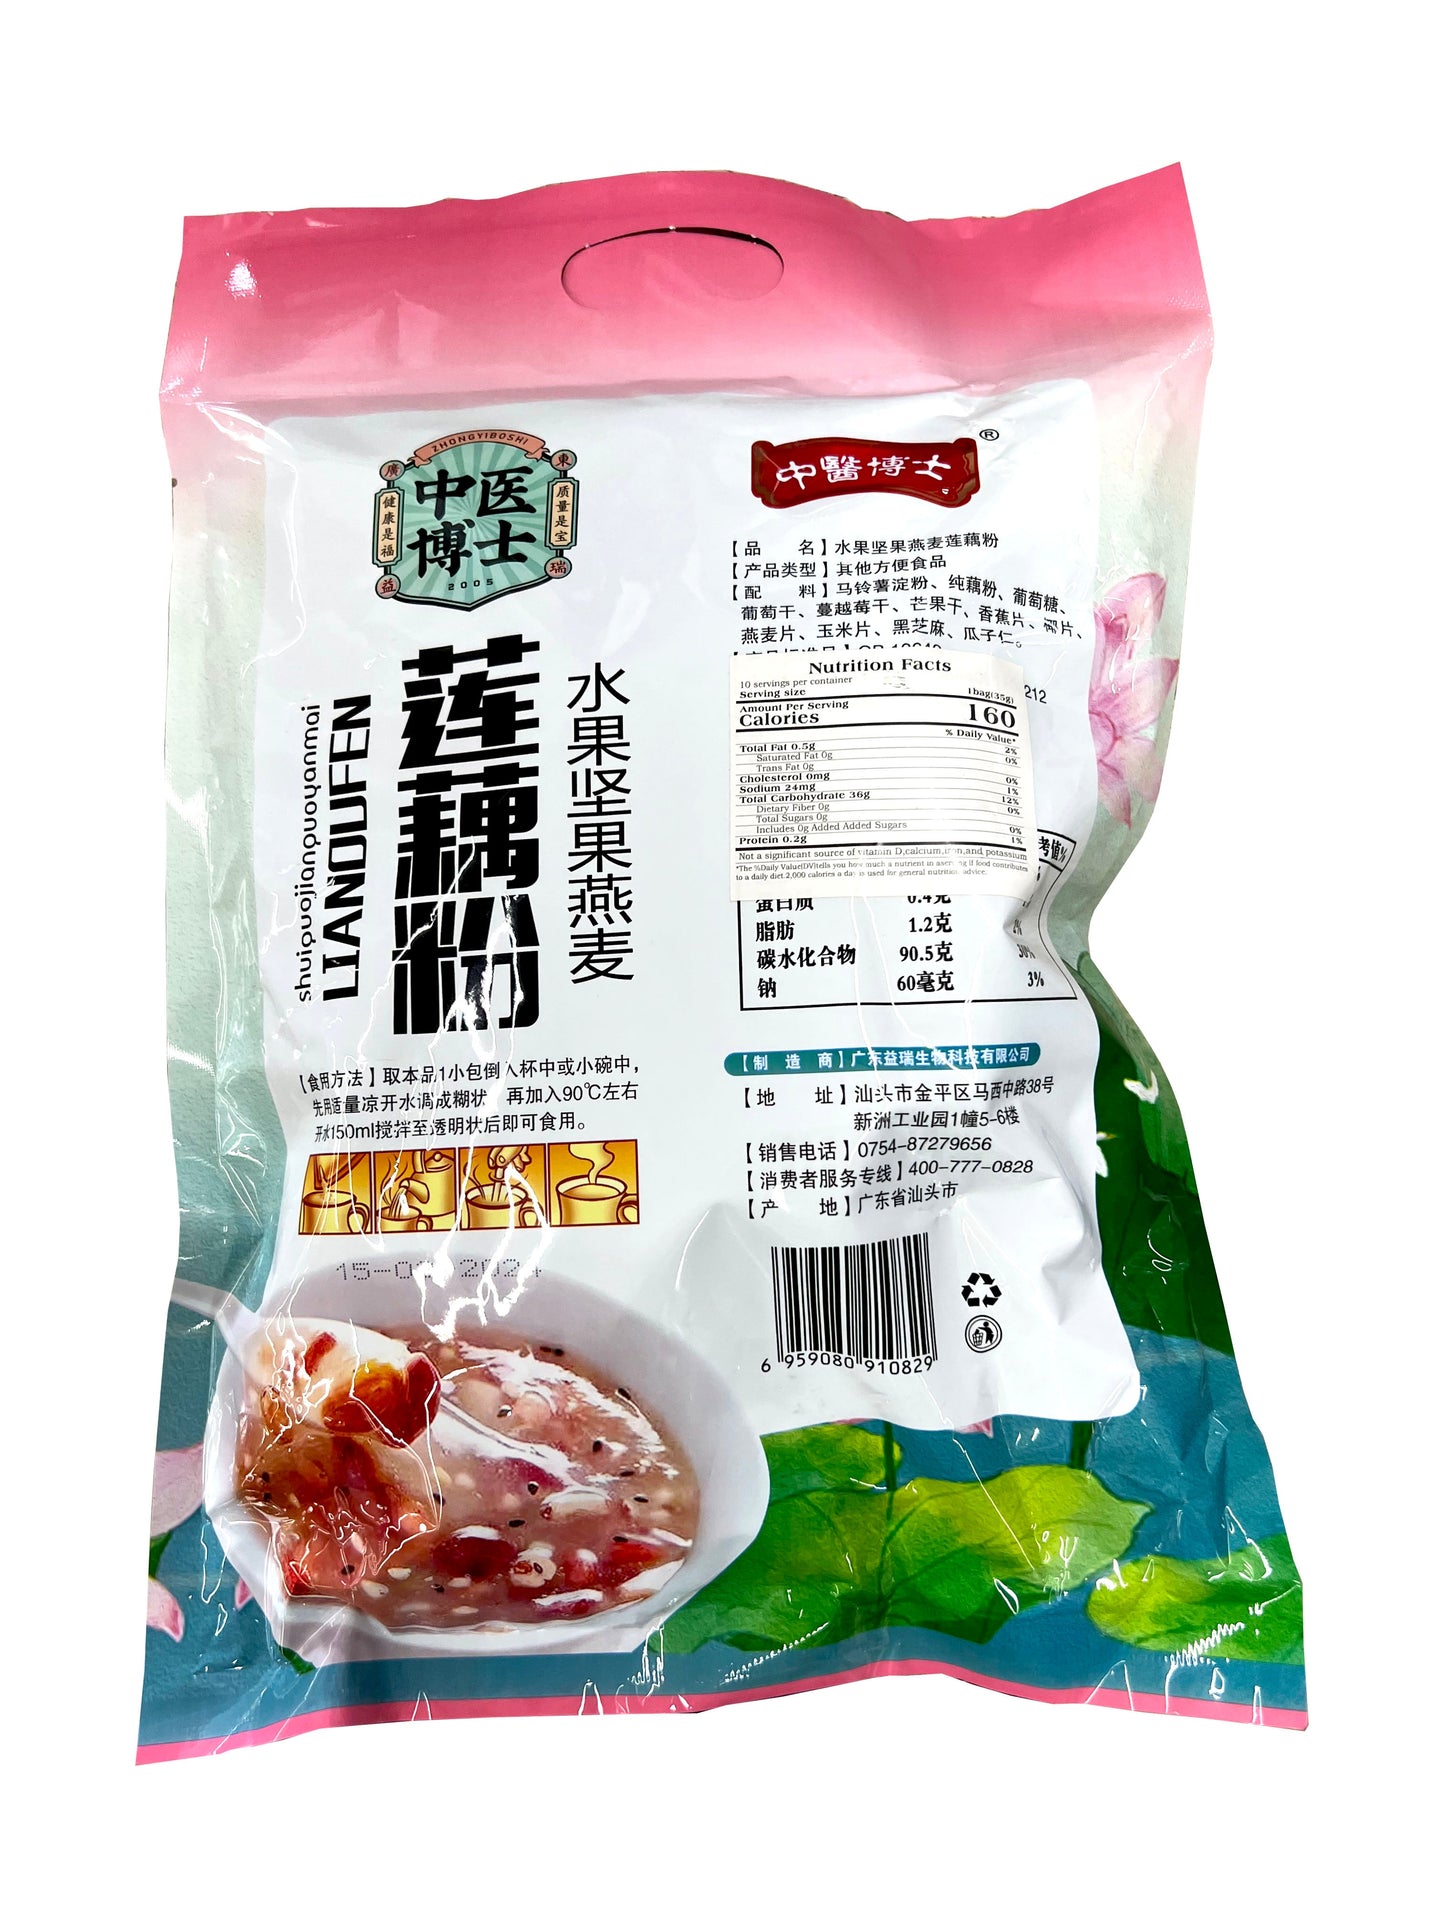 Fruits, Nuts, and Oats Lotus Root Powder (Shuiguo Jianguo Yanmai Lianoufen) 连藕粉水果坚果燕麦